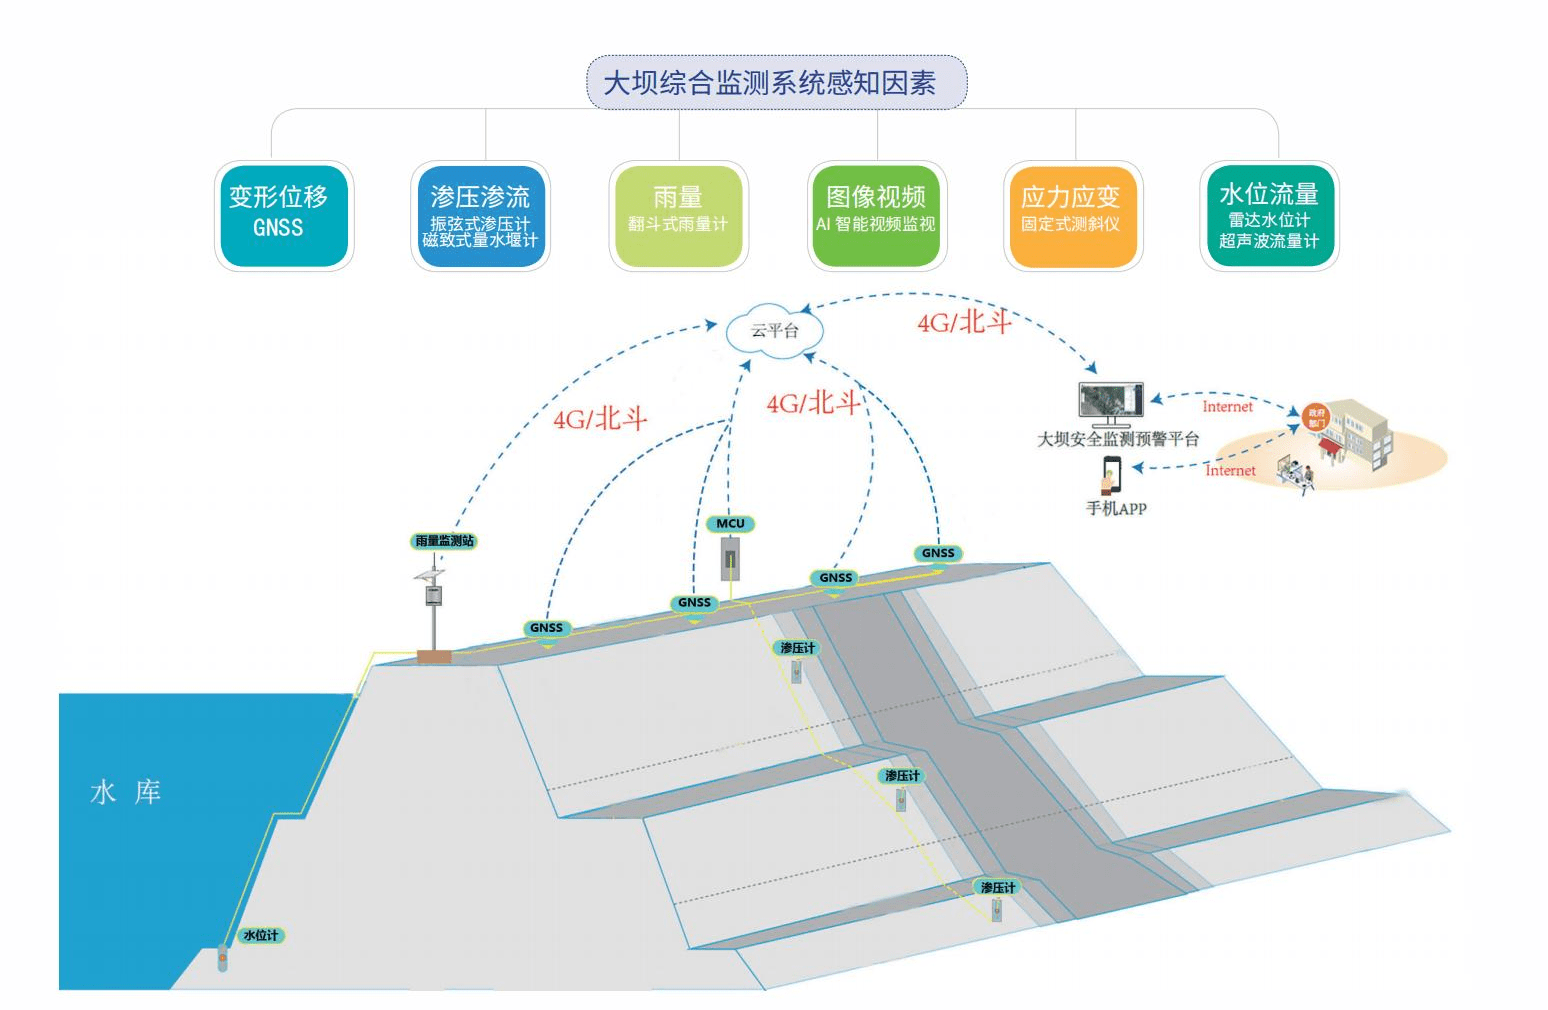 李博团队为优化中国水资源分配提供了新的研究维度和重要数据支撑